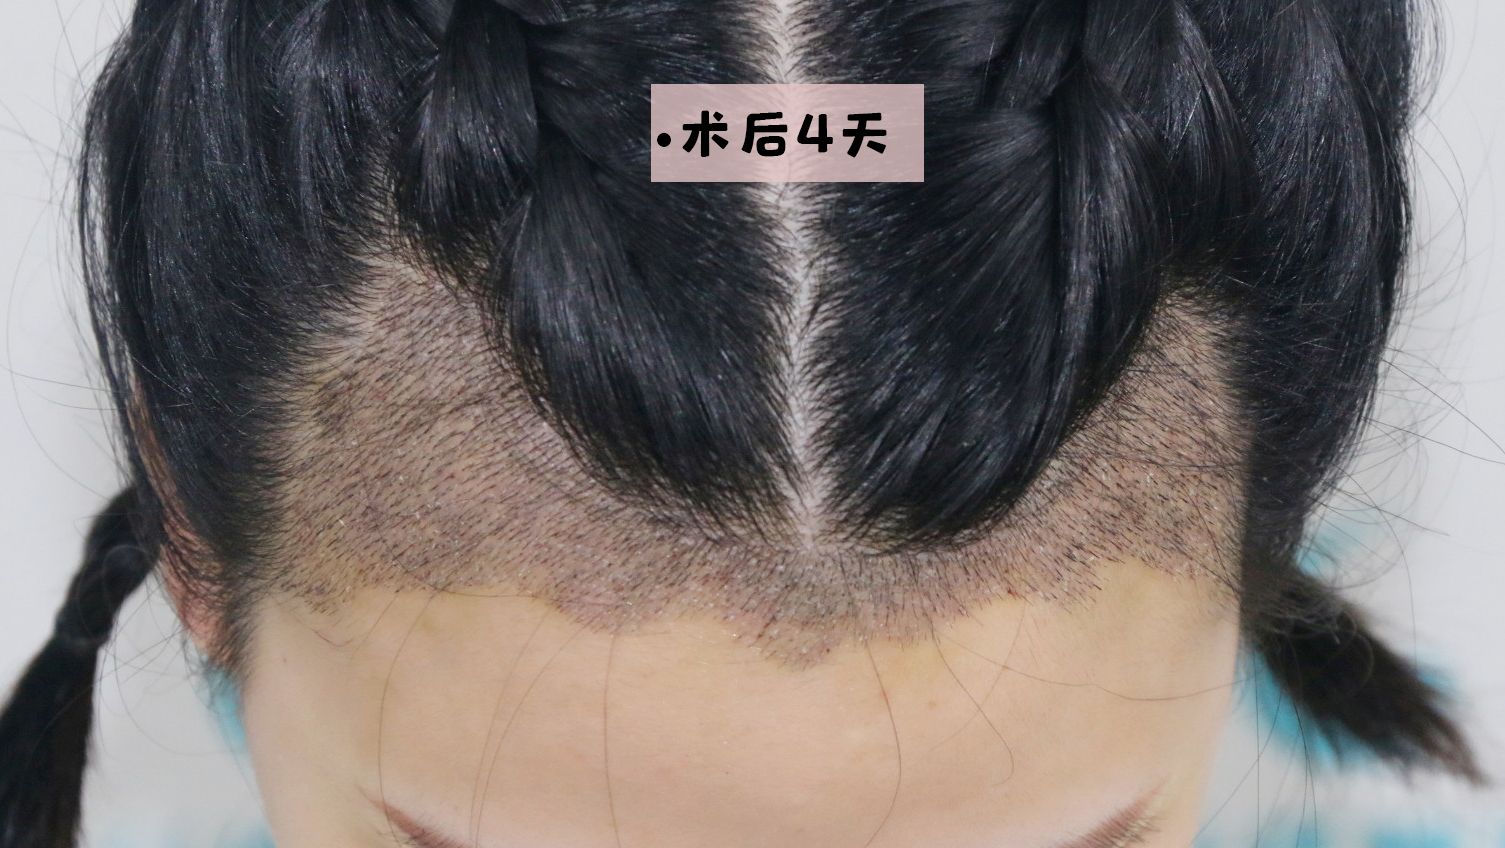 头发丝滑素材-头发丝滑图片-头发丝滑素材图片下载-觅知网